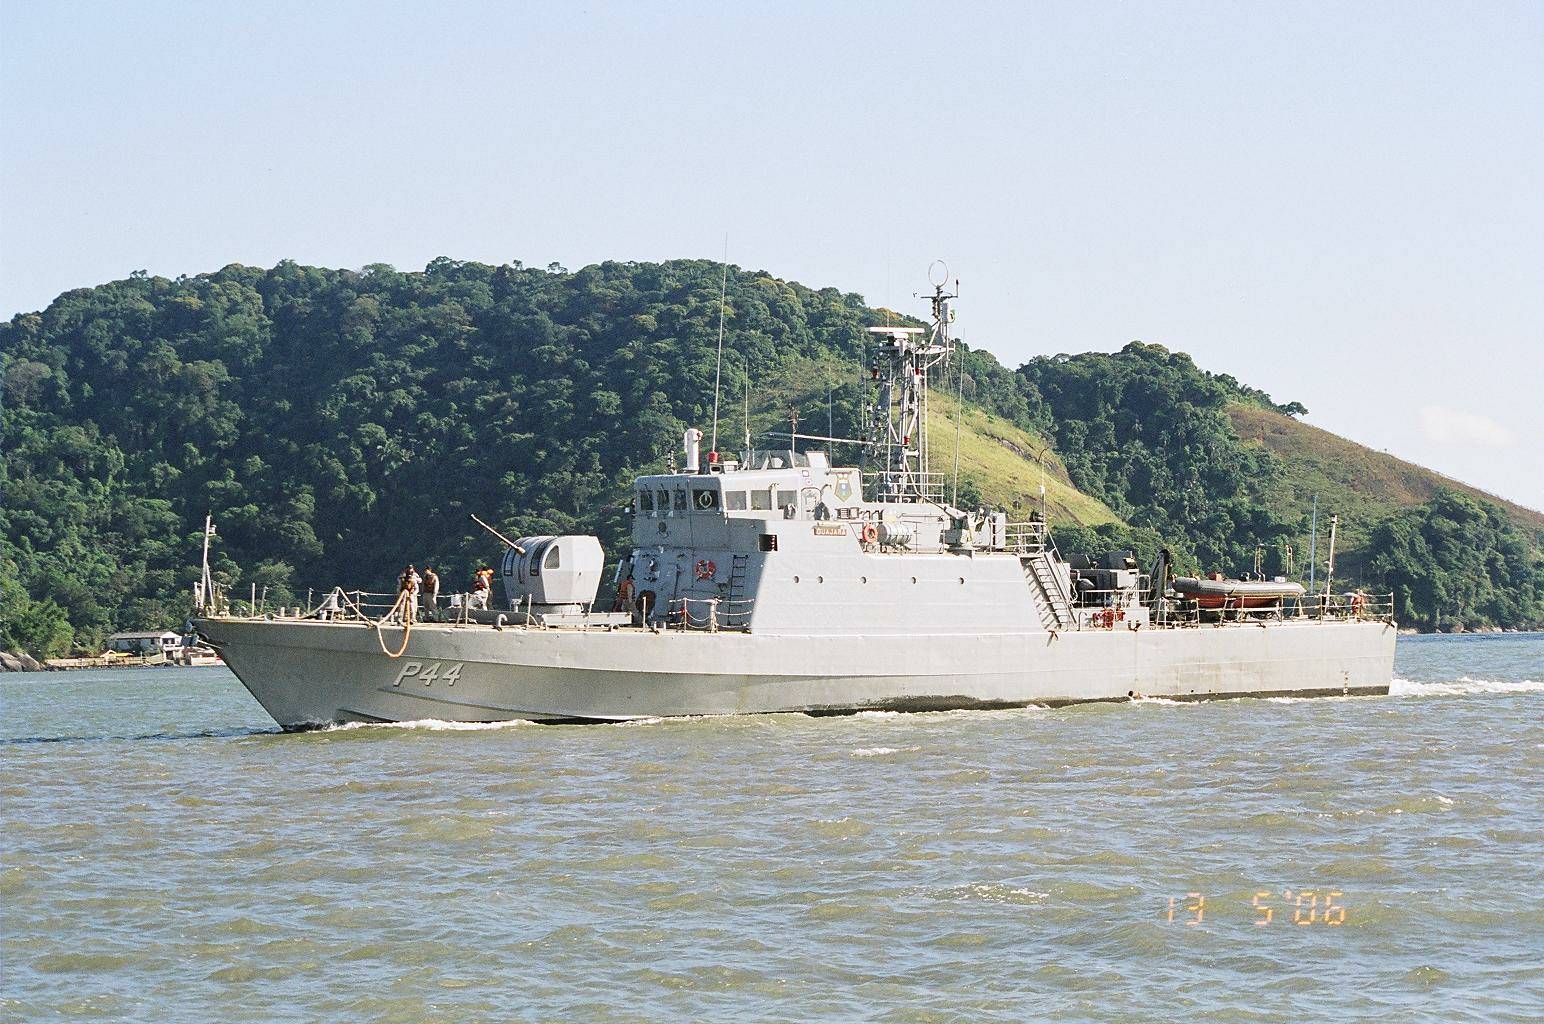 O NPa Guajará - P 44, entrando no porto de Santos-SP, voltando de uma patrulha. (foto: Marcelo M. Lopes da Silva - 13/05/2006)